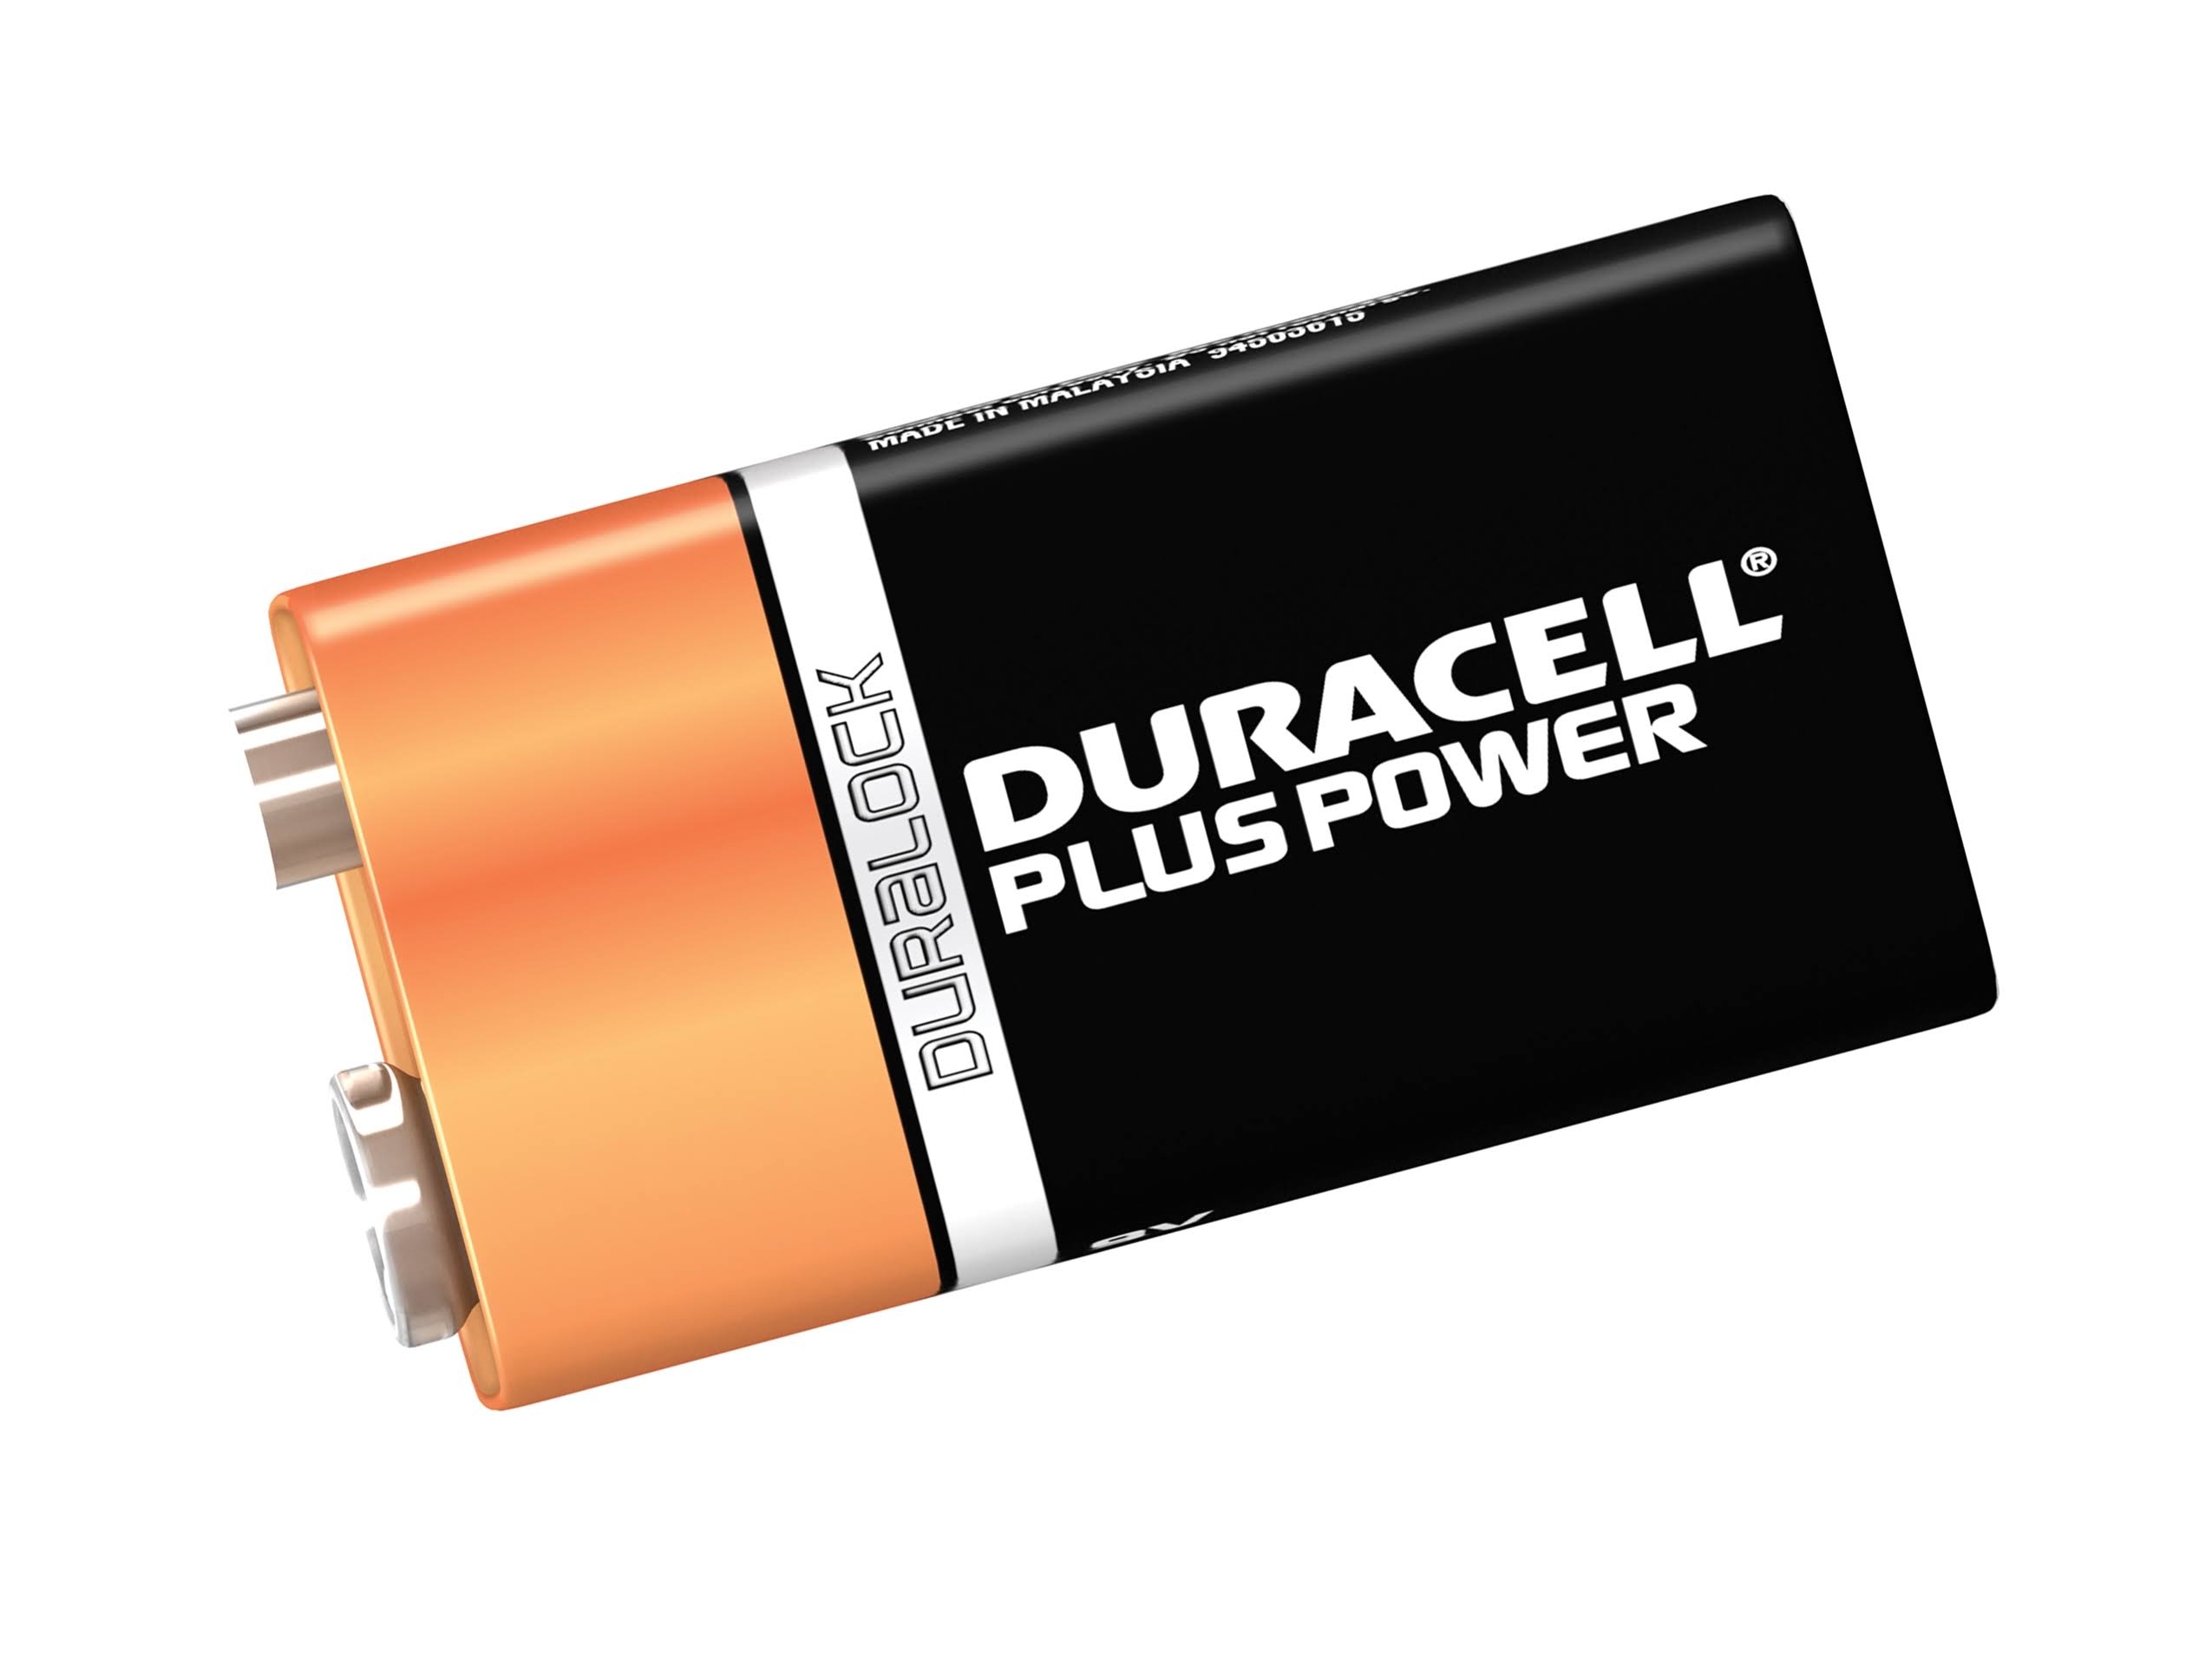 Duracell Plus Power Alkaline Batteries - 9V, 2pk